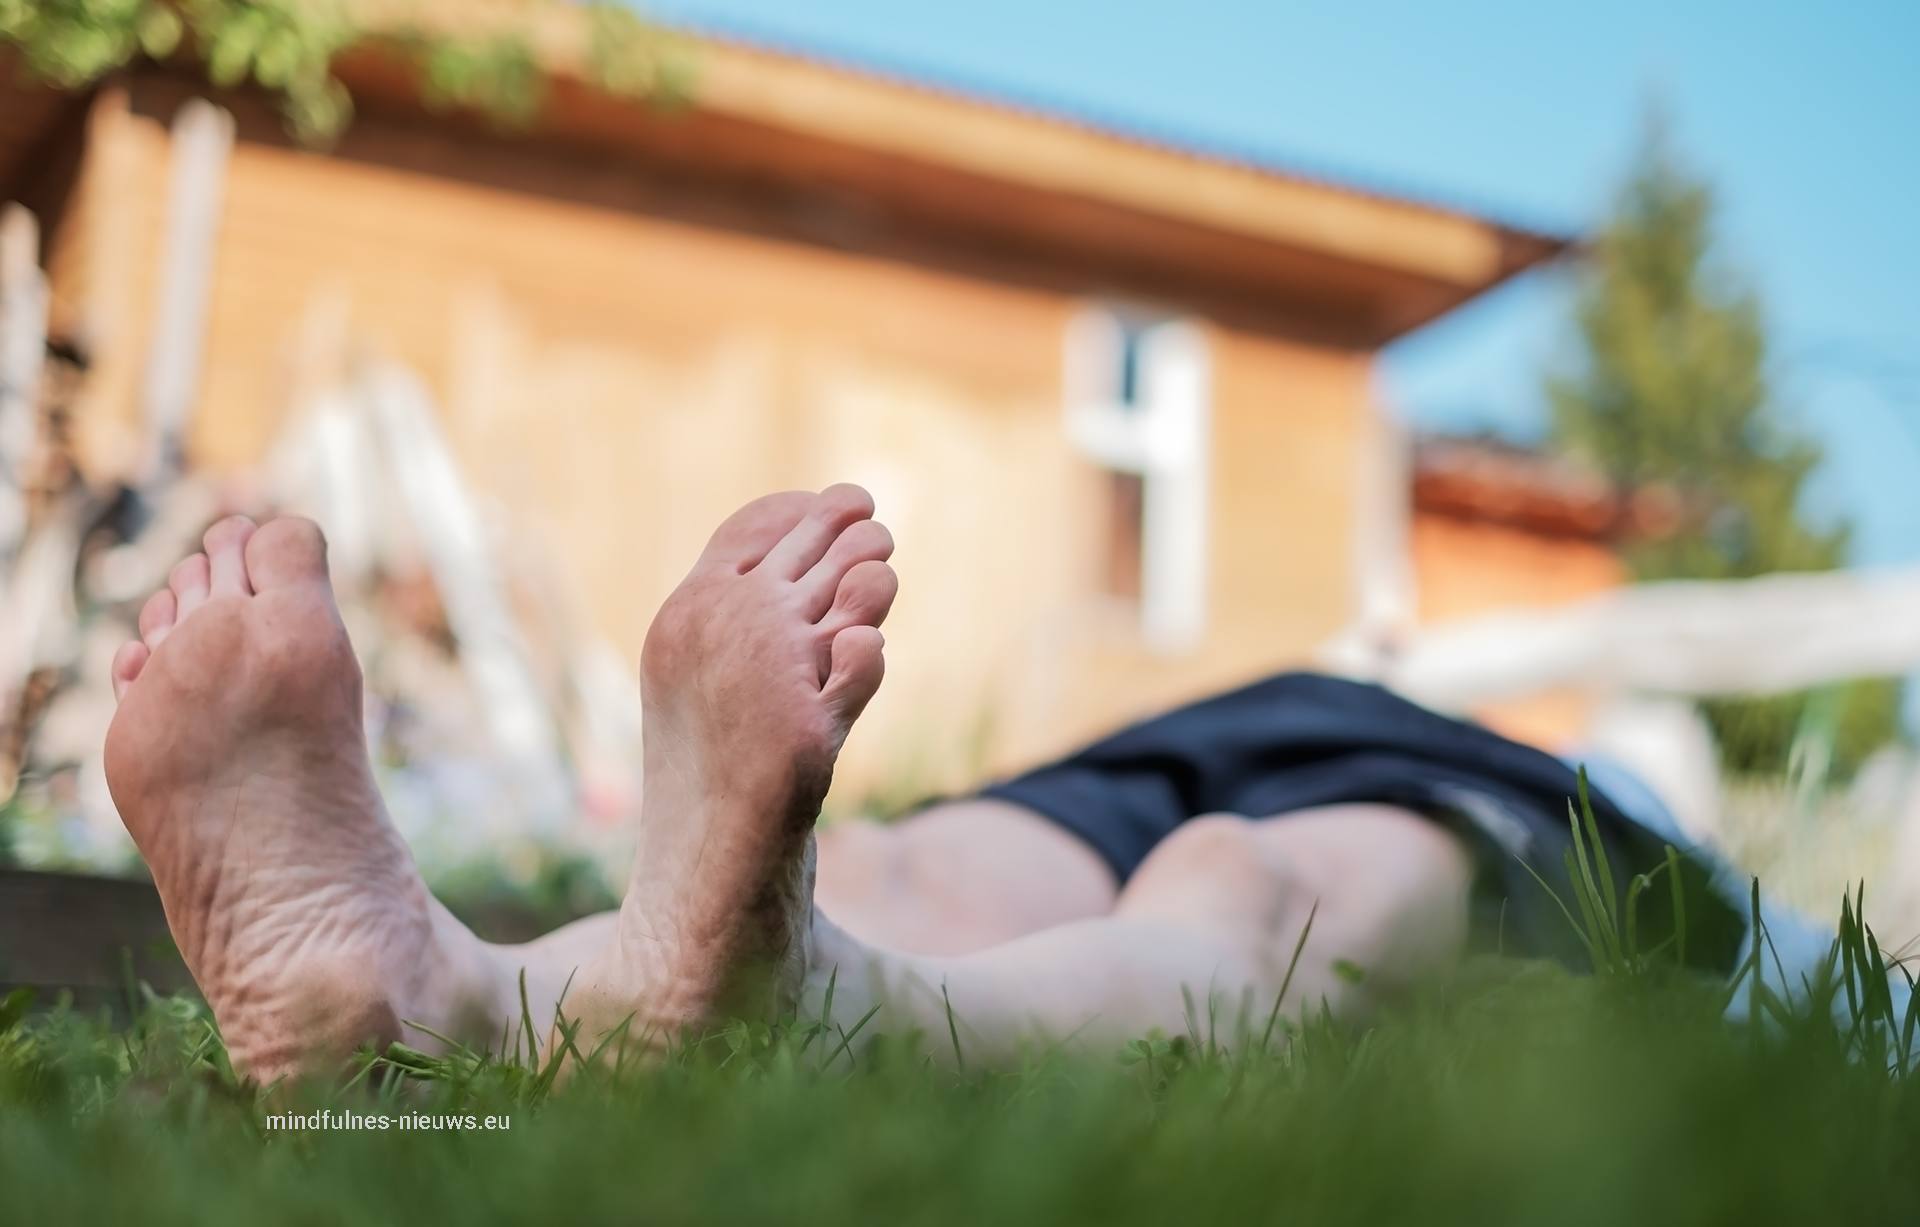 virtualisatieoefening foto van relaxe man liggend op gras